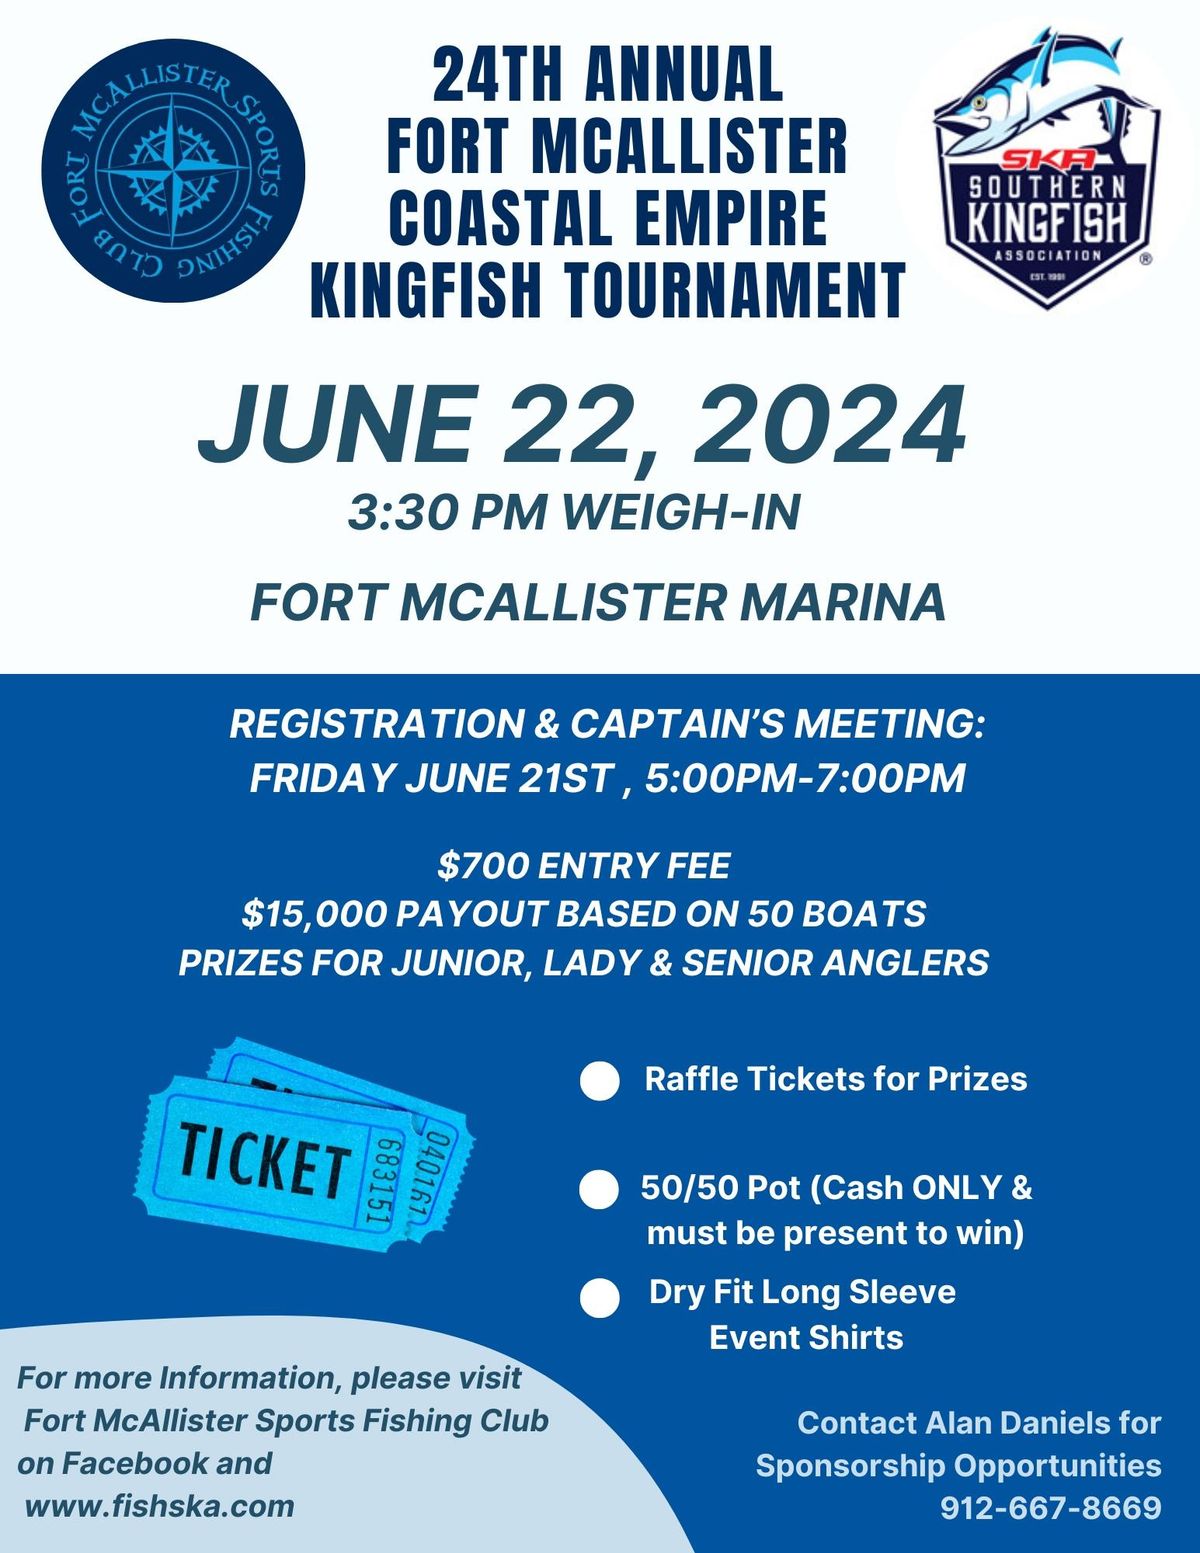 FMSFC Coastal Empire Kingfish Classic 